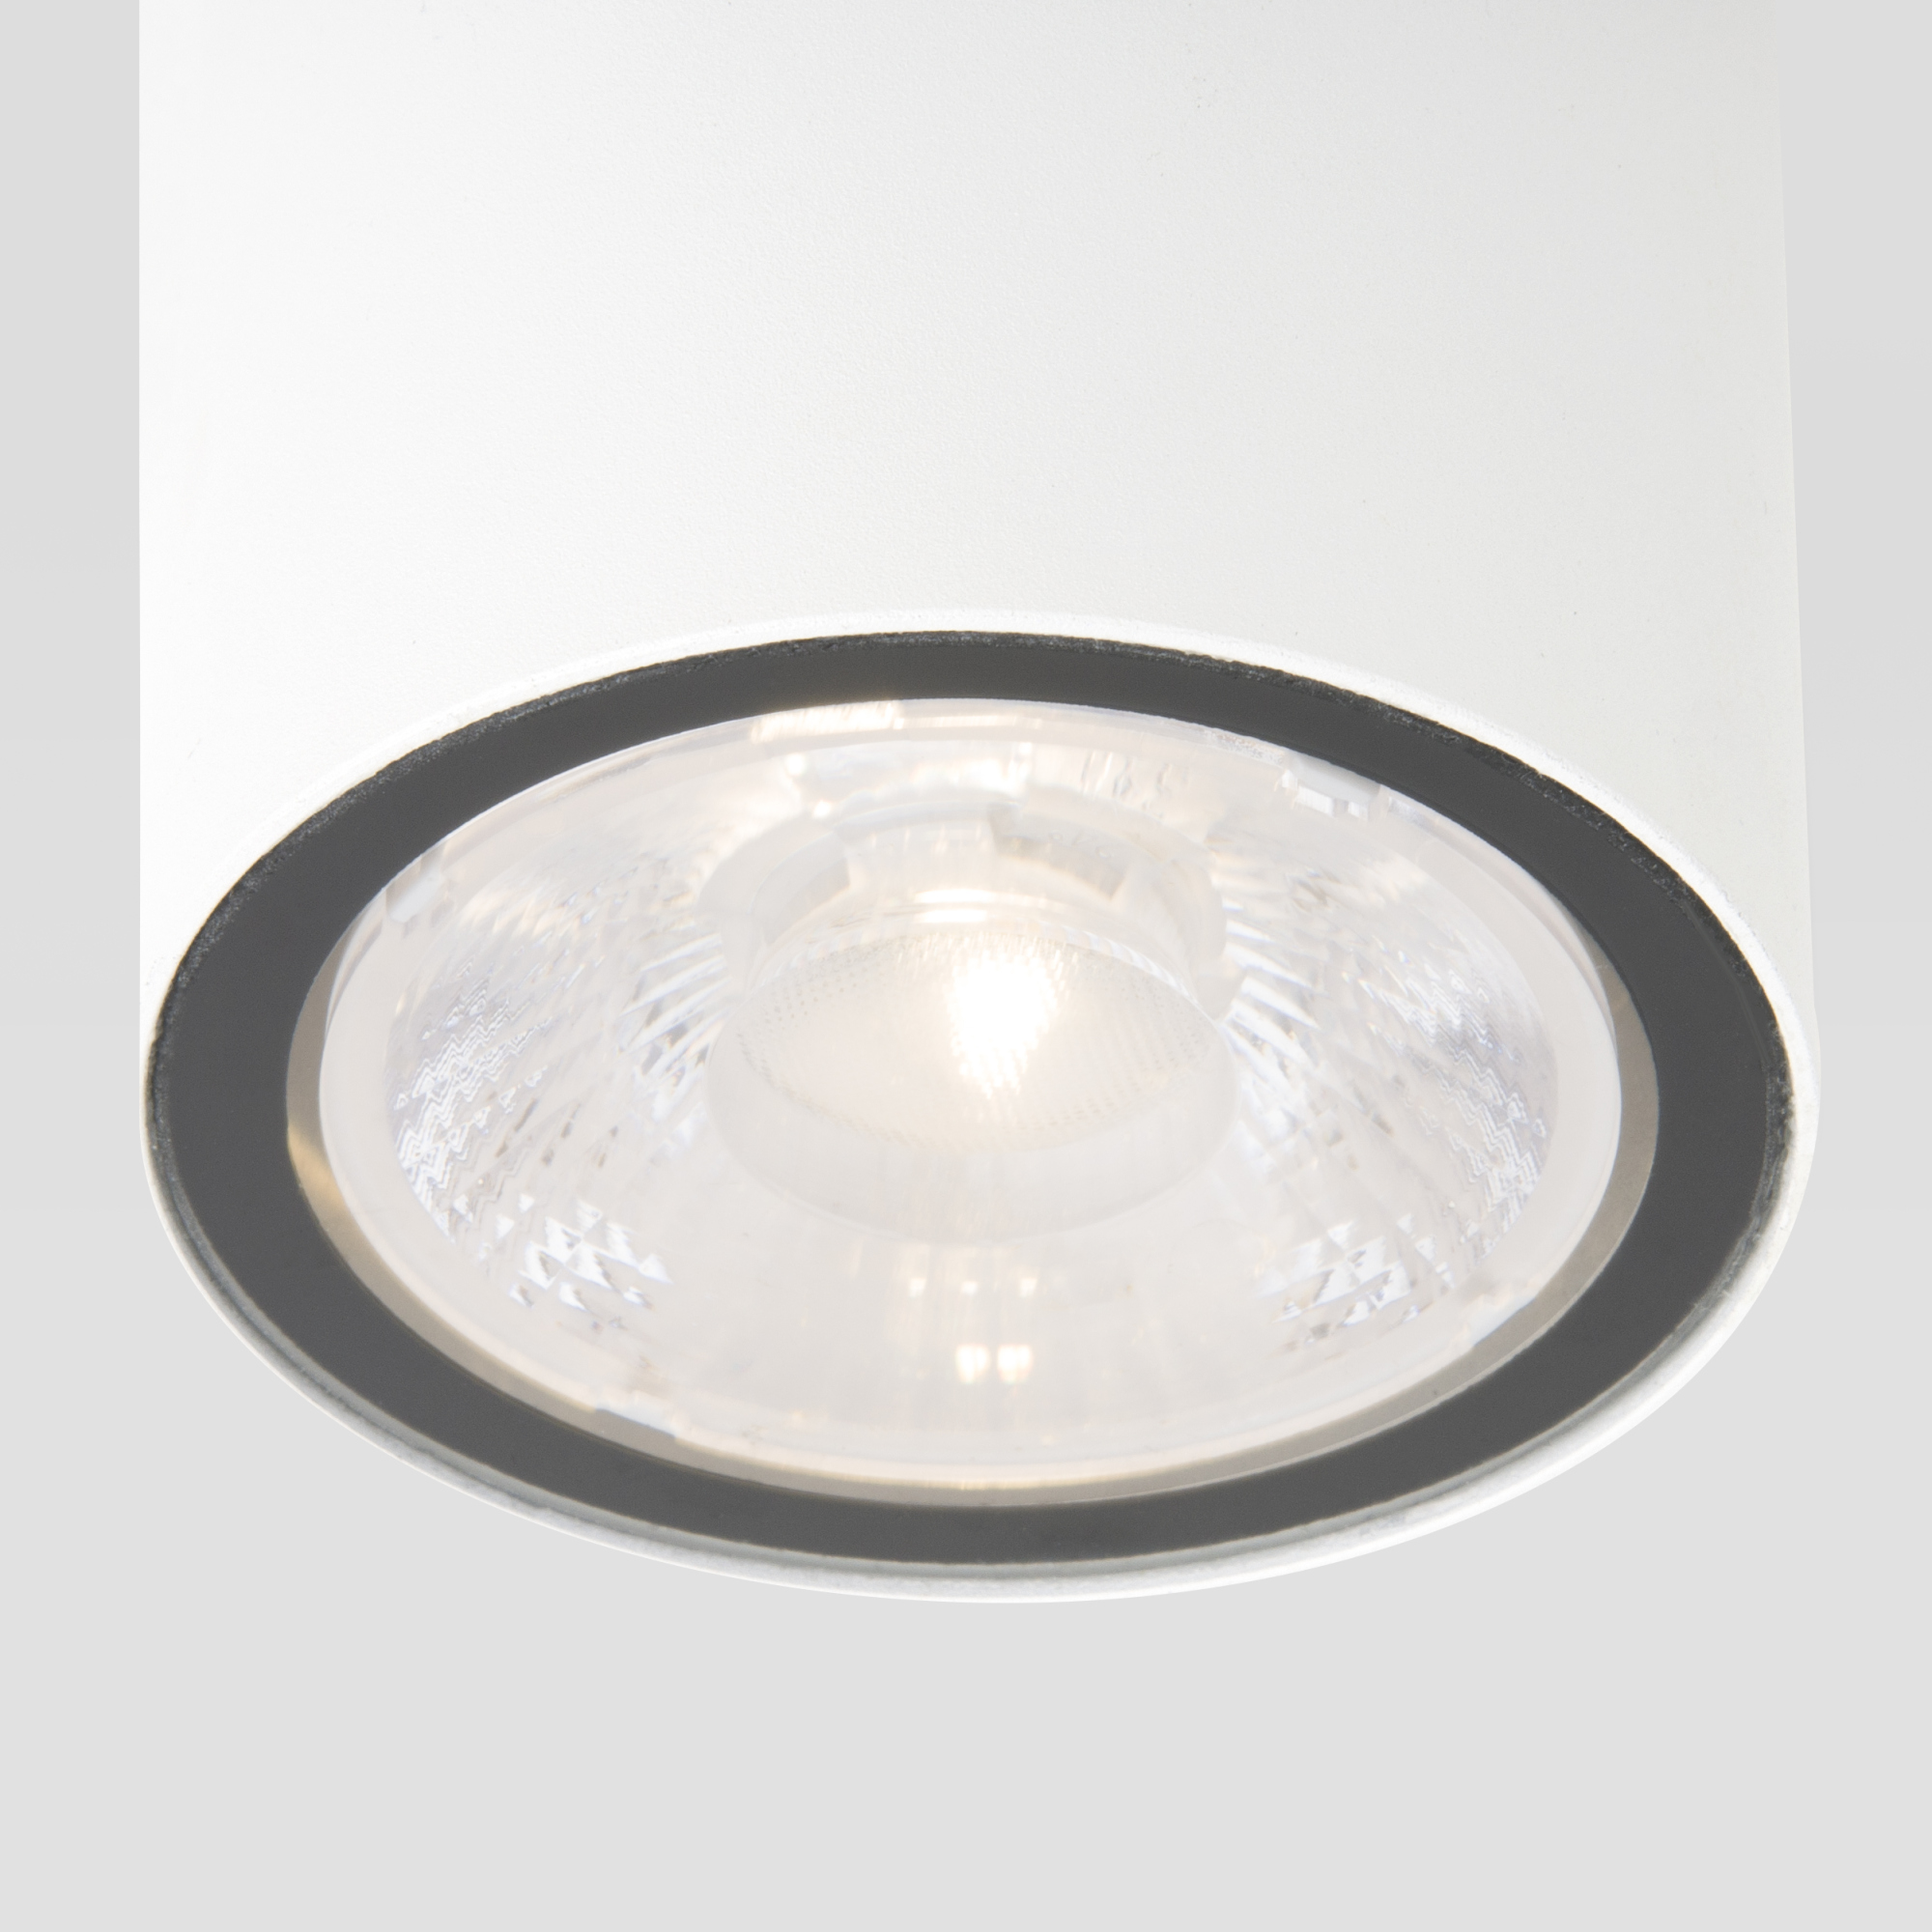 Светильник накладной светодиодный влагозащищенный  Elektrostandard Light LED 35131/H белый a056230